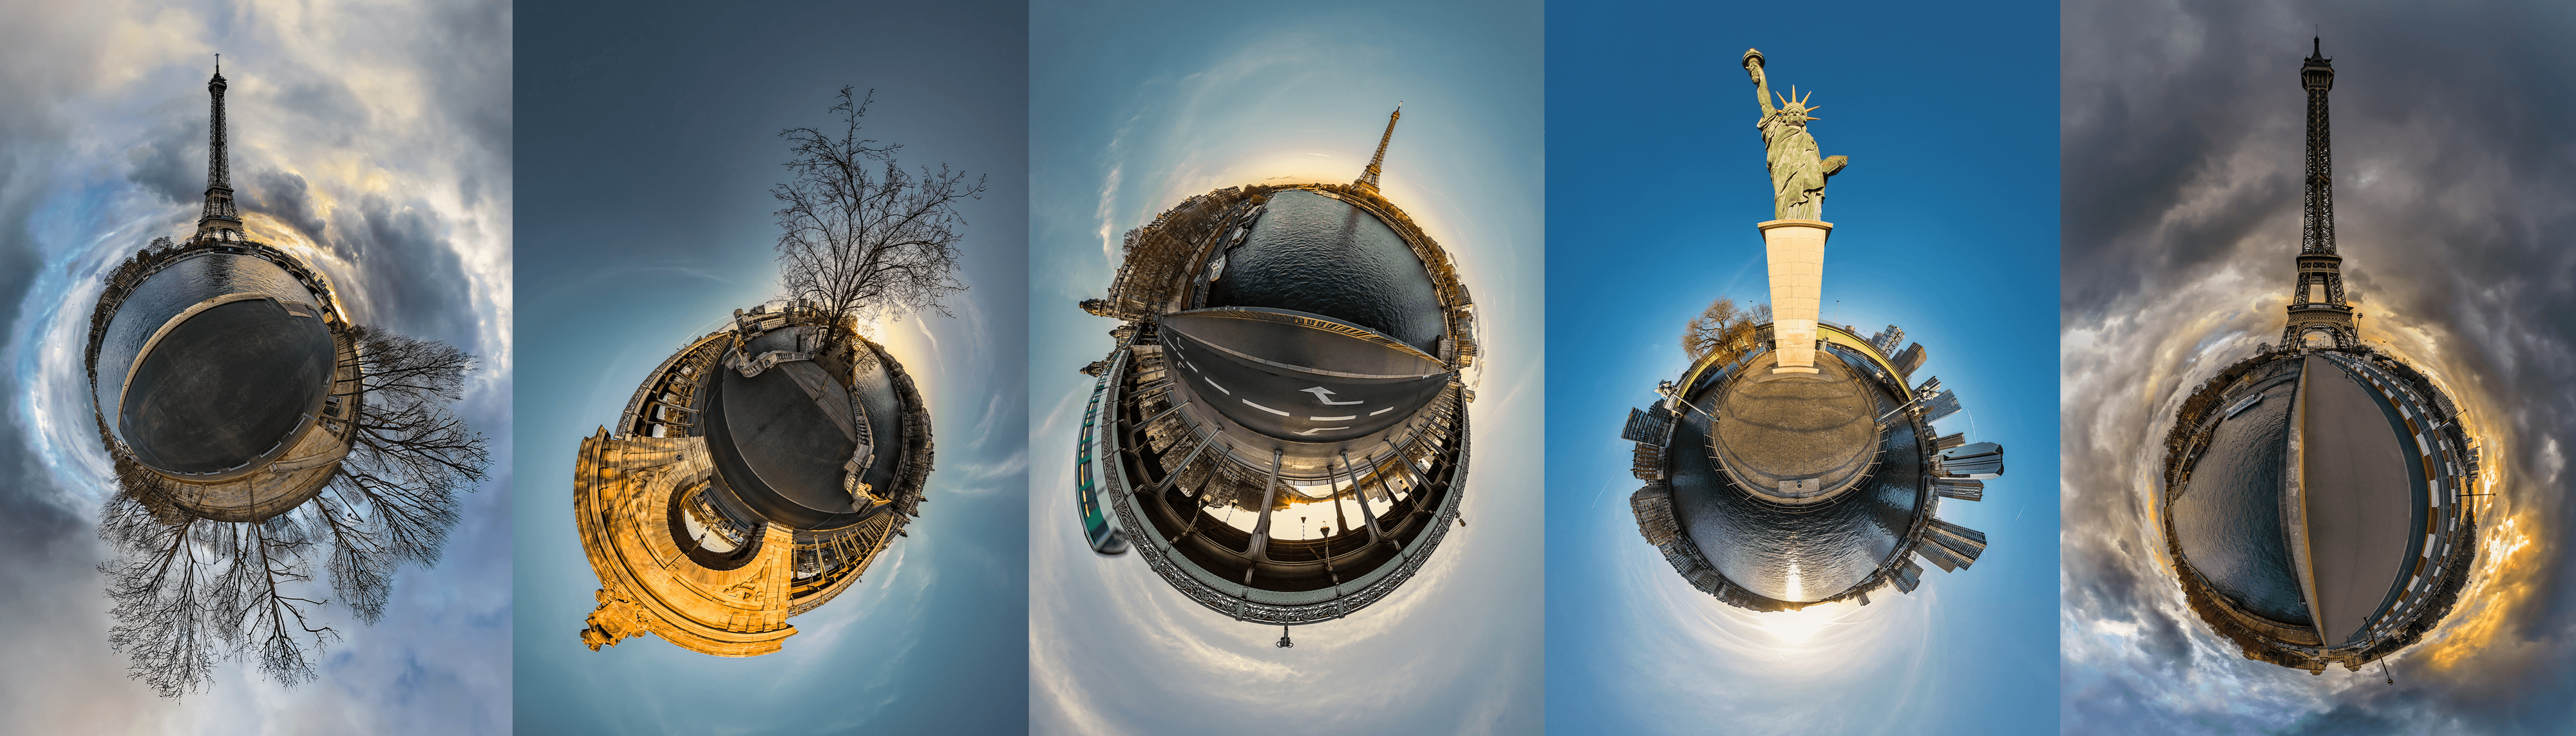 Tiny Planet-sur-Seine / Fine Art Photography